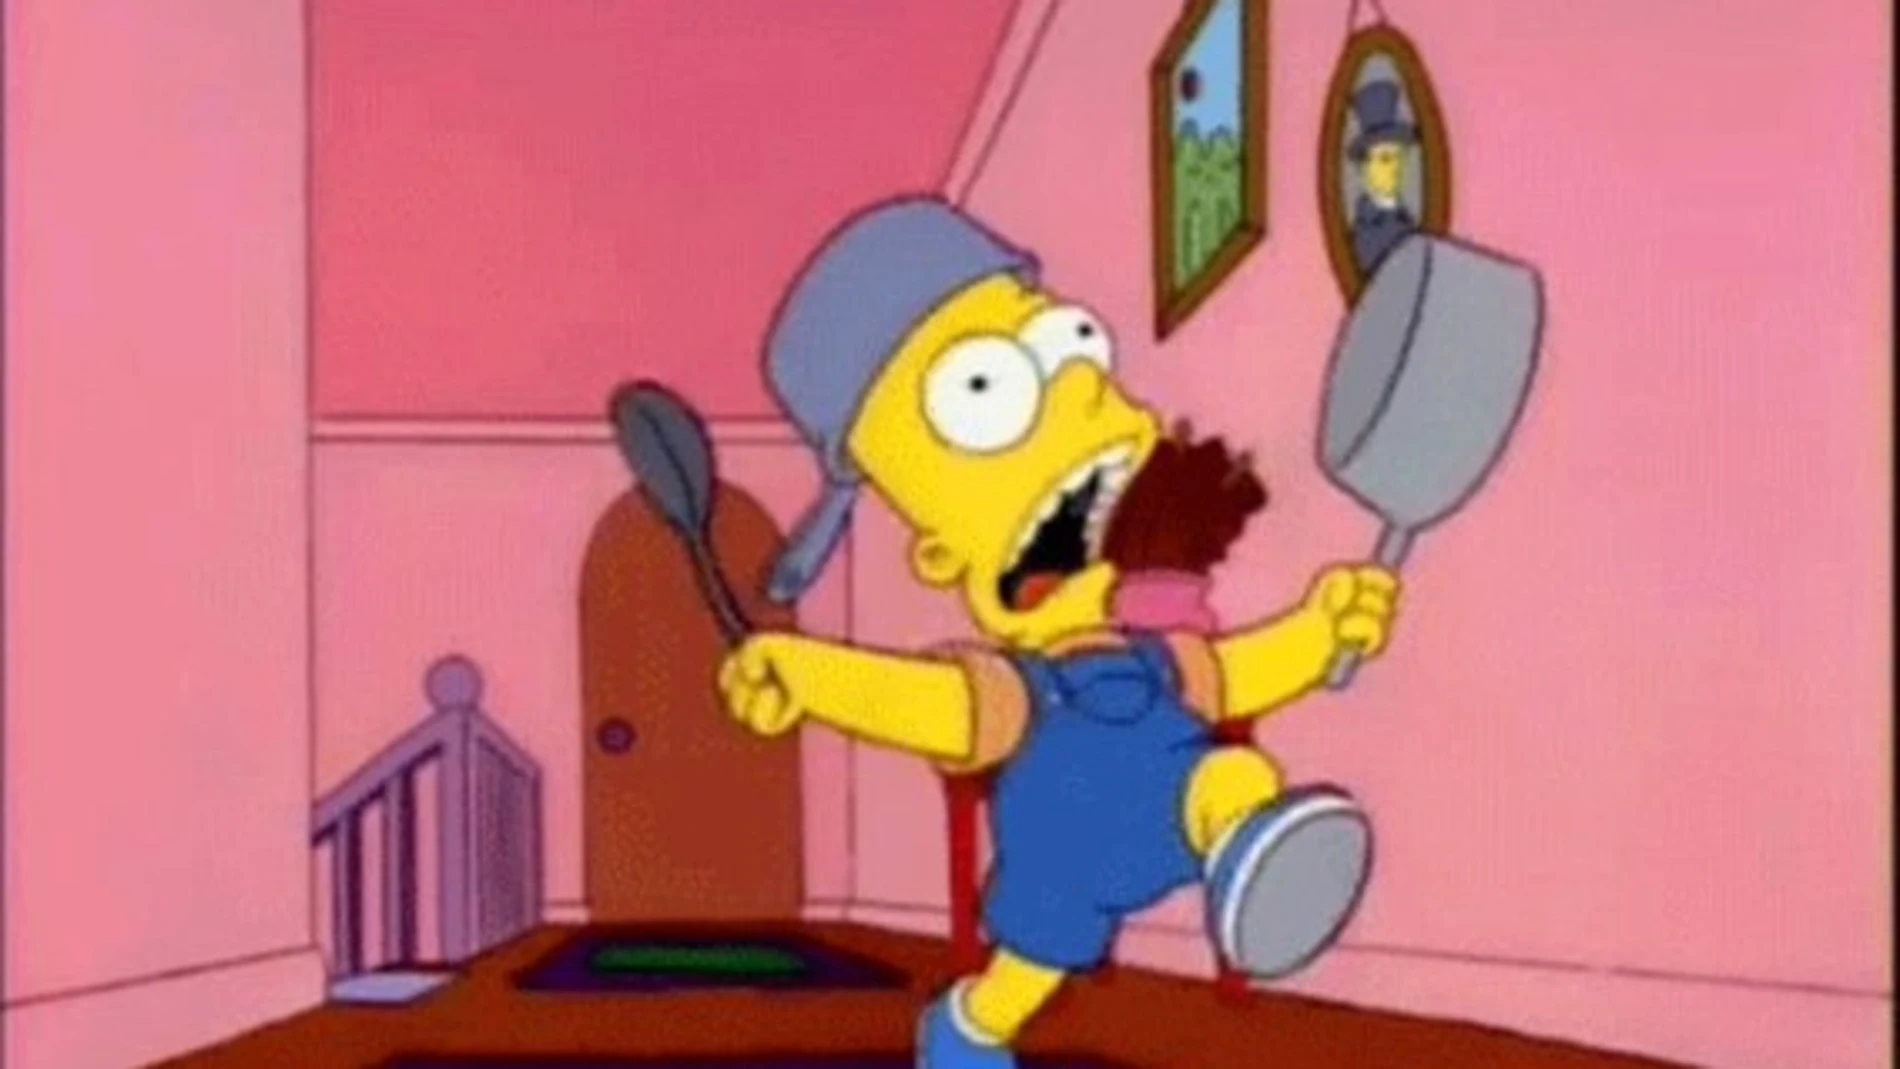 Un conocido meme nacido en la famosa serie de animación “Los Simpson”. Consiste en Bart, el hijo de la familia que, celoso de su hermana nonata, intenta llamar la atención de sus padres a toda costa.